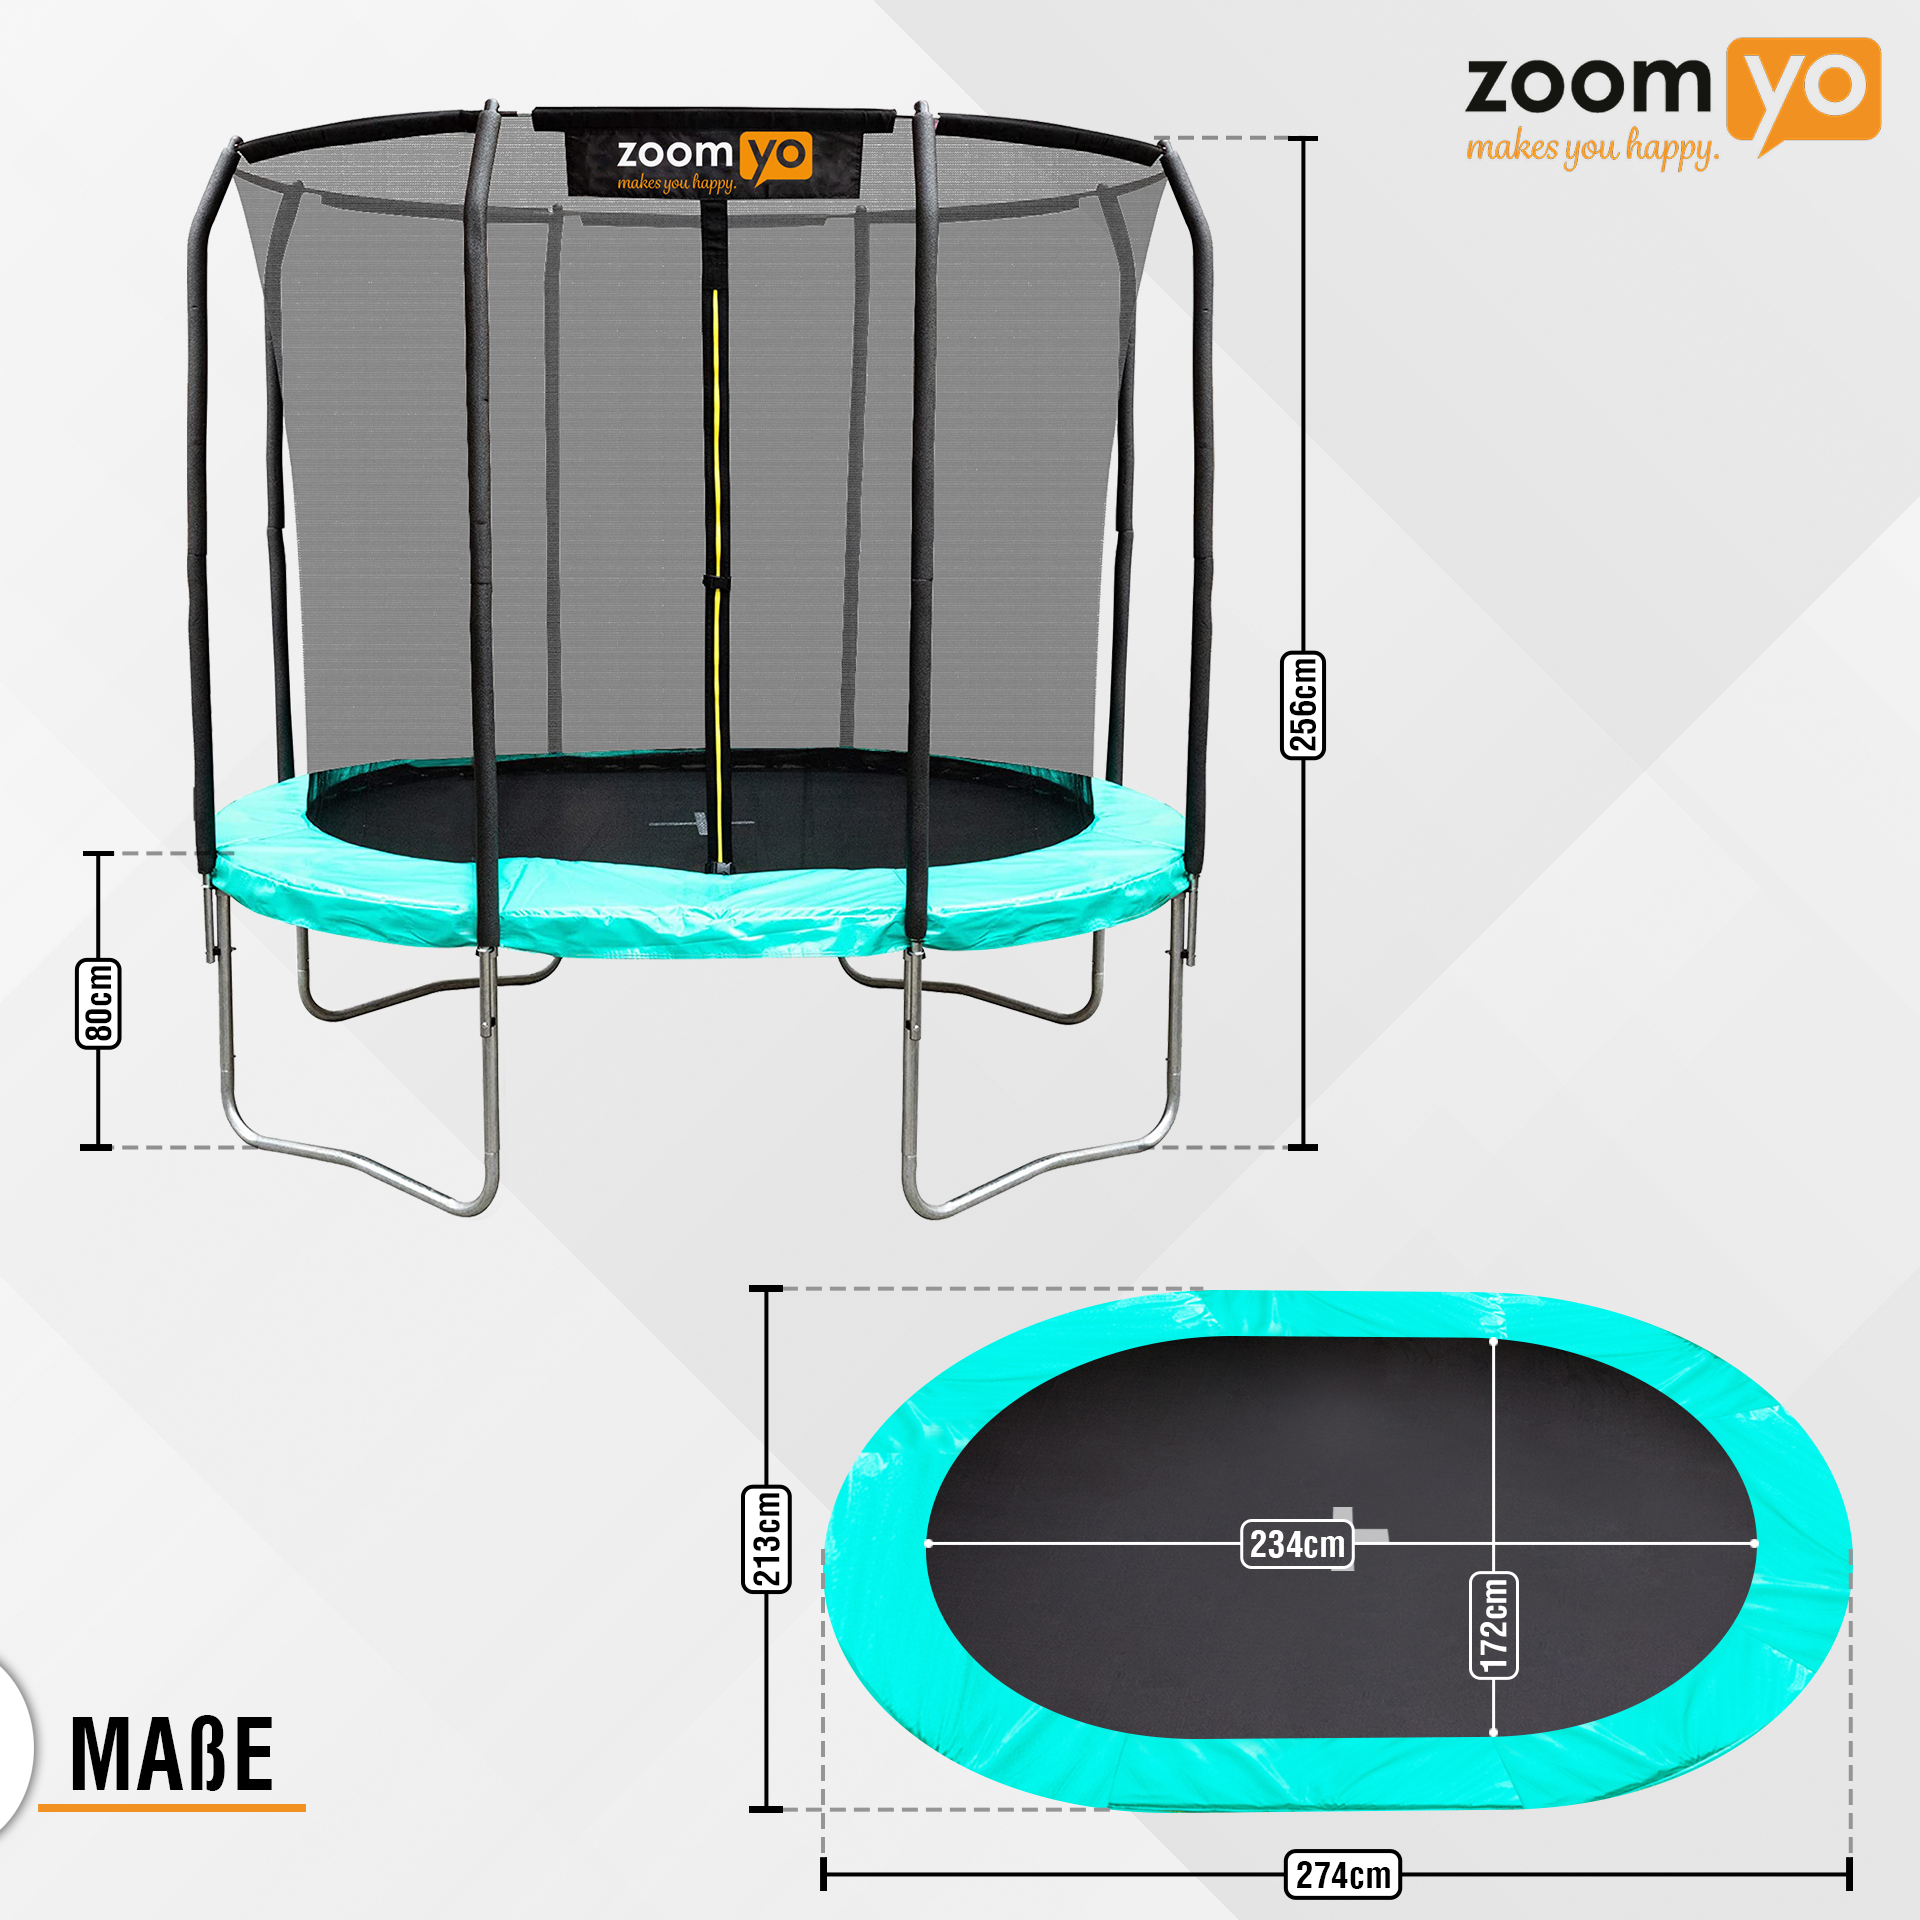 ZOOMYO Trampolin,oval,Leiter separat erhältlich,für schwarz-Grün Trampolin, komplexe Sprungtechniken